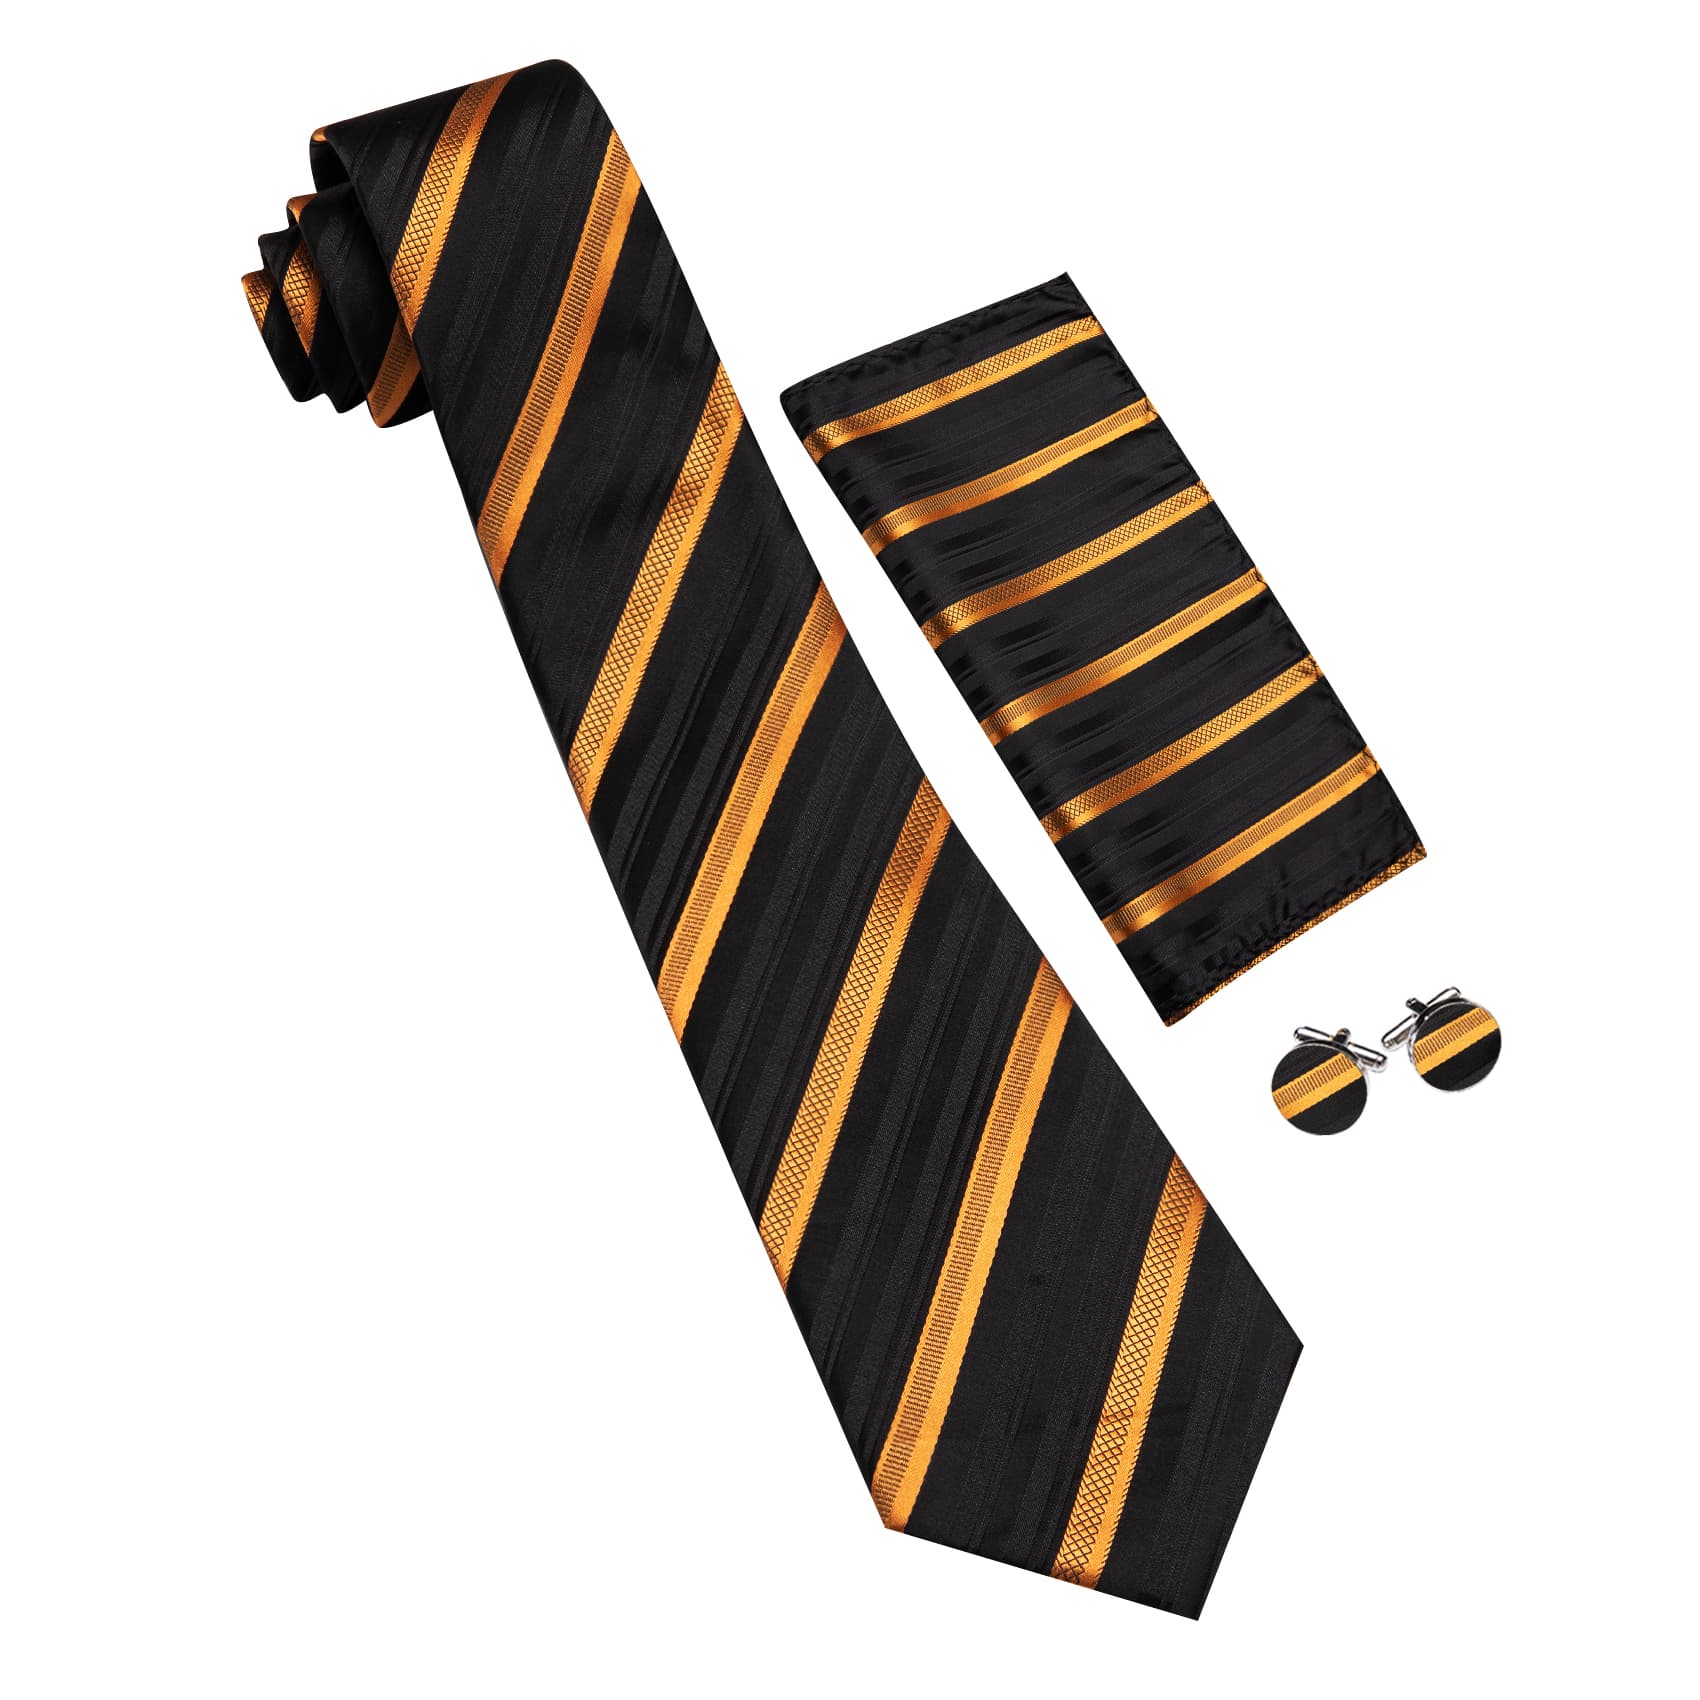 Mens Striped Tie Black Necktie Set with Gold Stripes